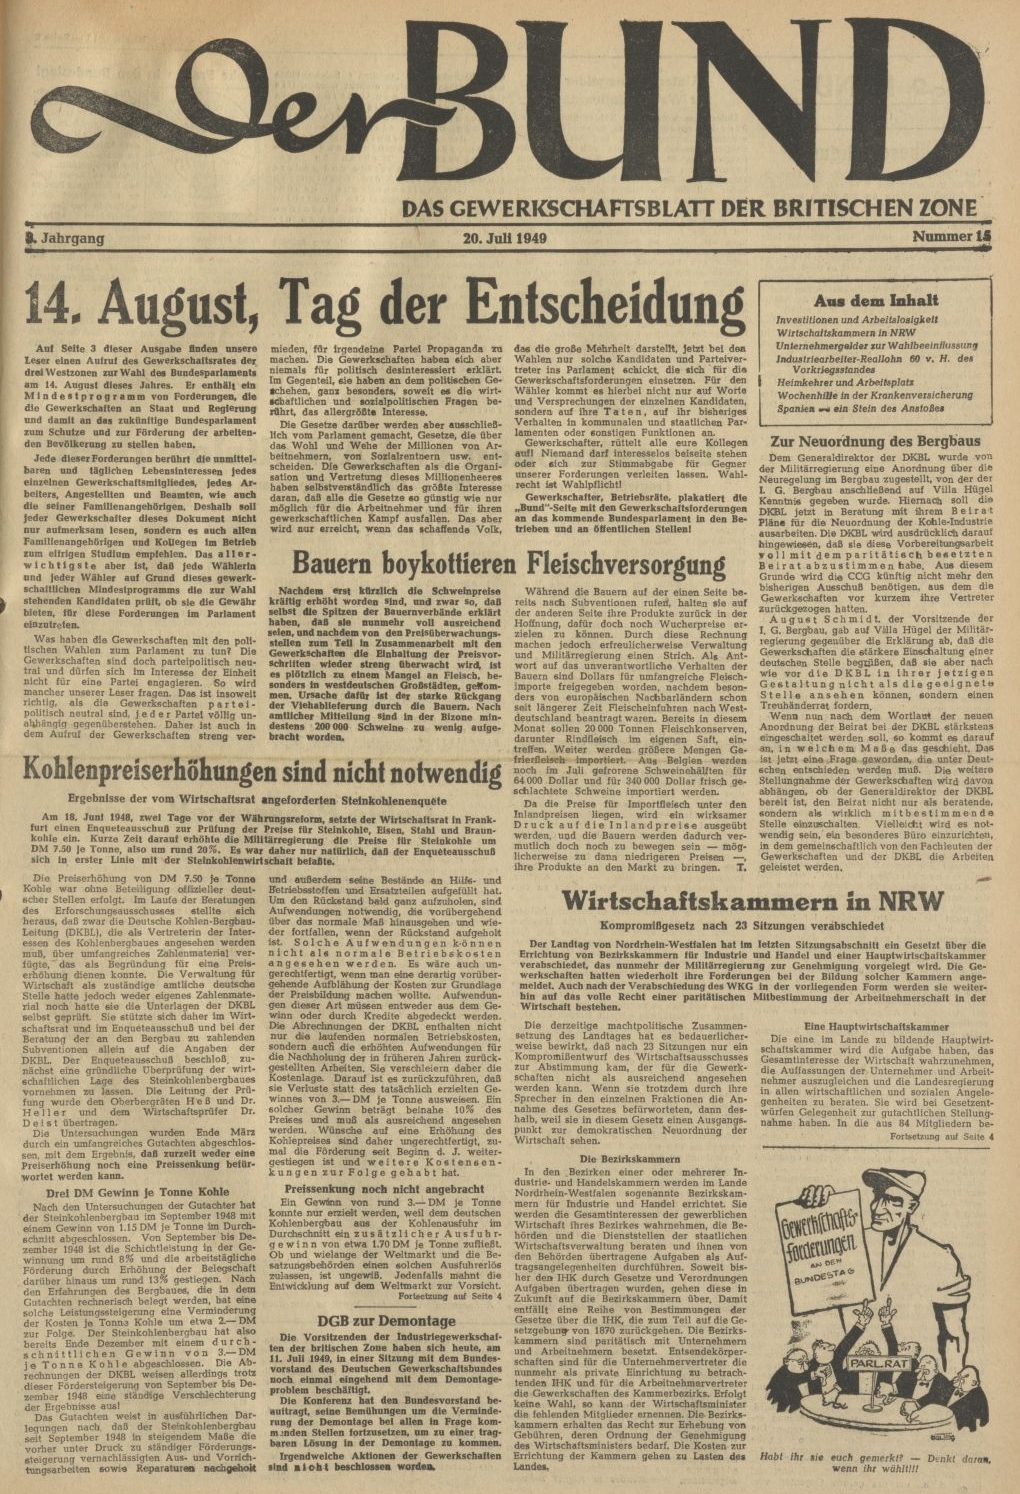 Titelseite von "Der Bund - Das Gewerkschaftsblatt der britischen Zone" vom 20. Juli 1949 (Quelle: Bibliothek im AdsD) 